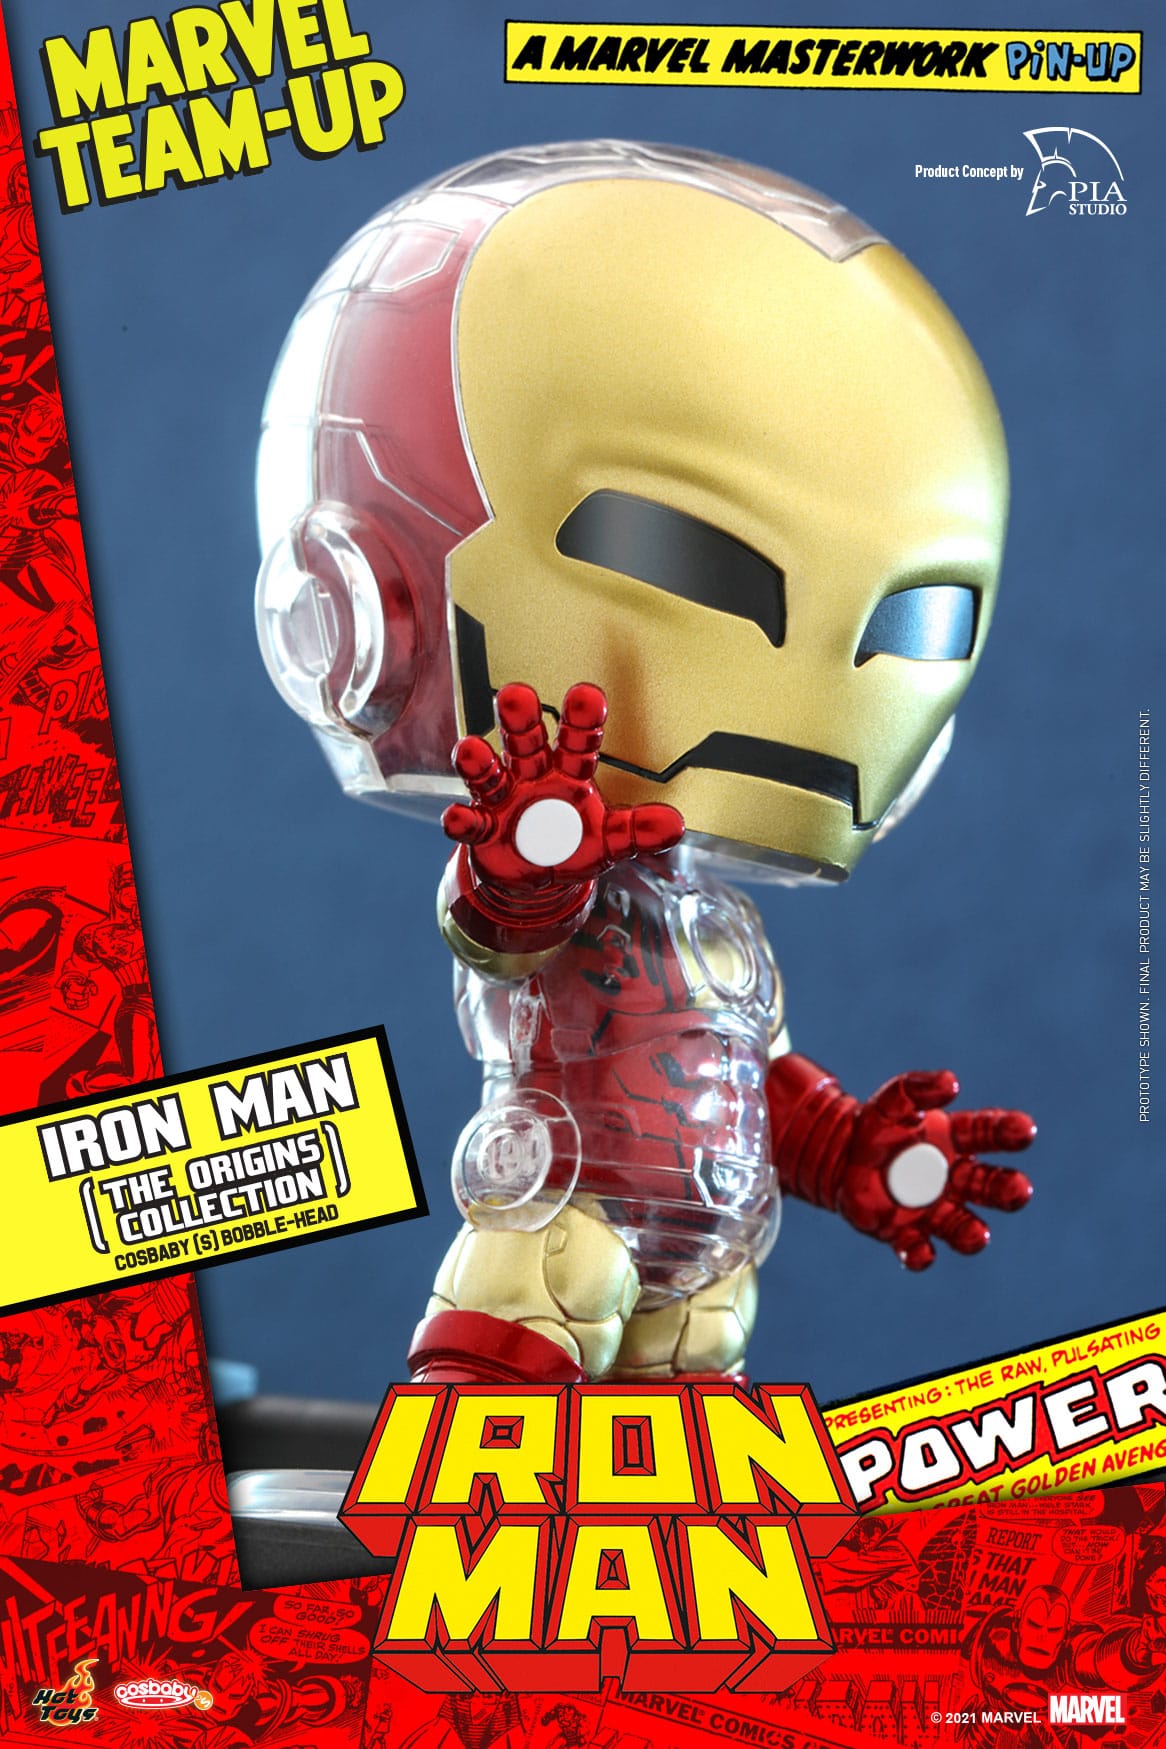 Iron Man (az Origins kollekció) Cosbaby